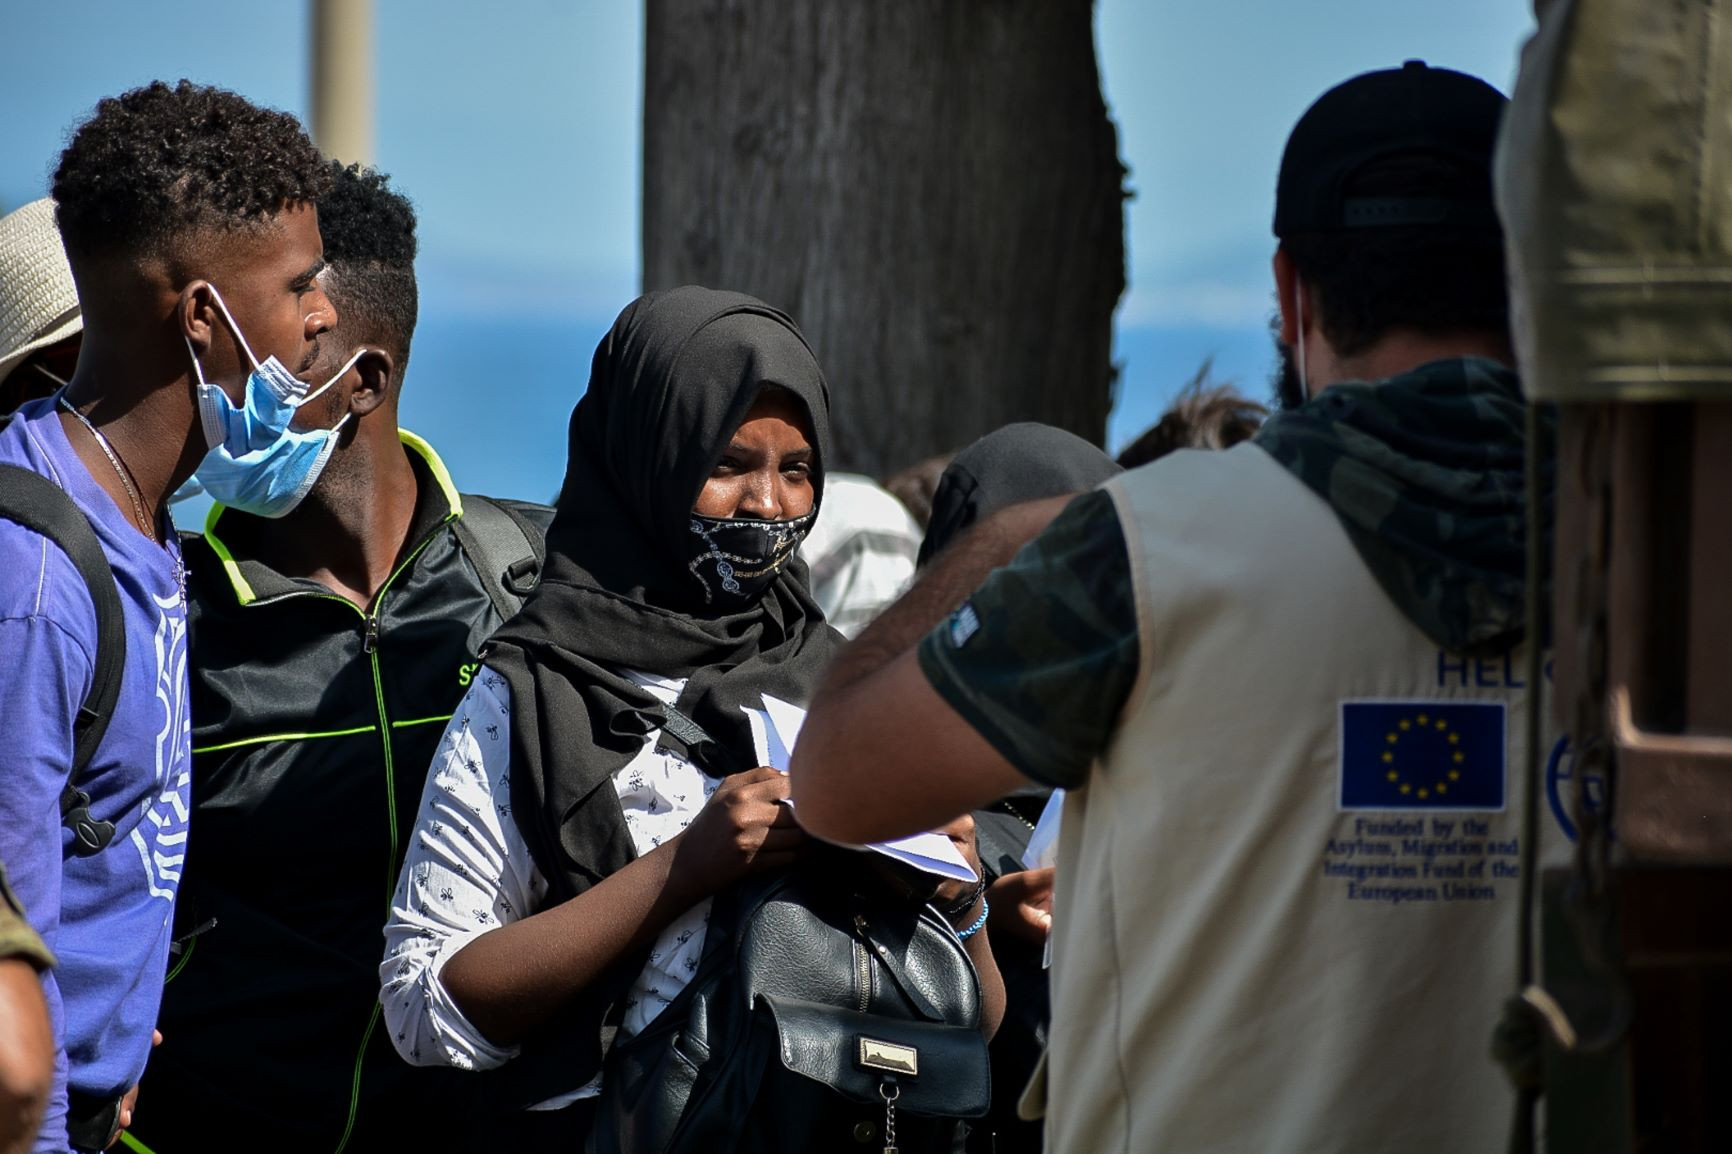 Οργανώσεις για τα δικαιώματα προσφύγων και μεταναστών: «Το Ευρωπαϊκό Σύμφωνο ενισχύει το ρατσιστικό αφήγημα»